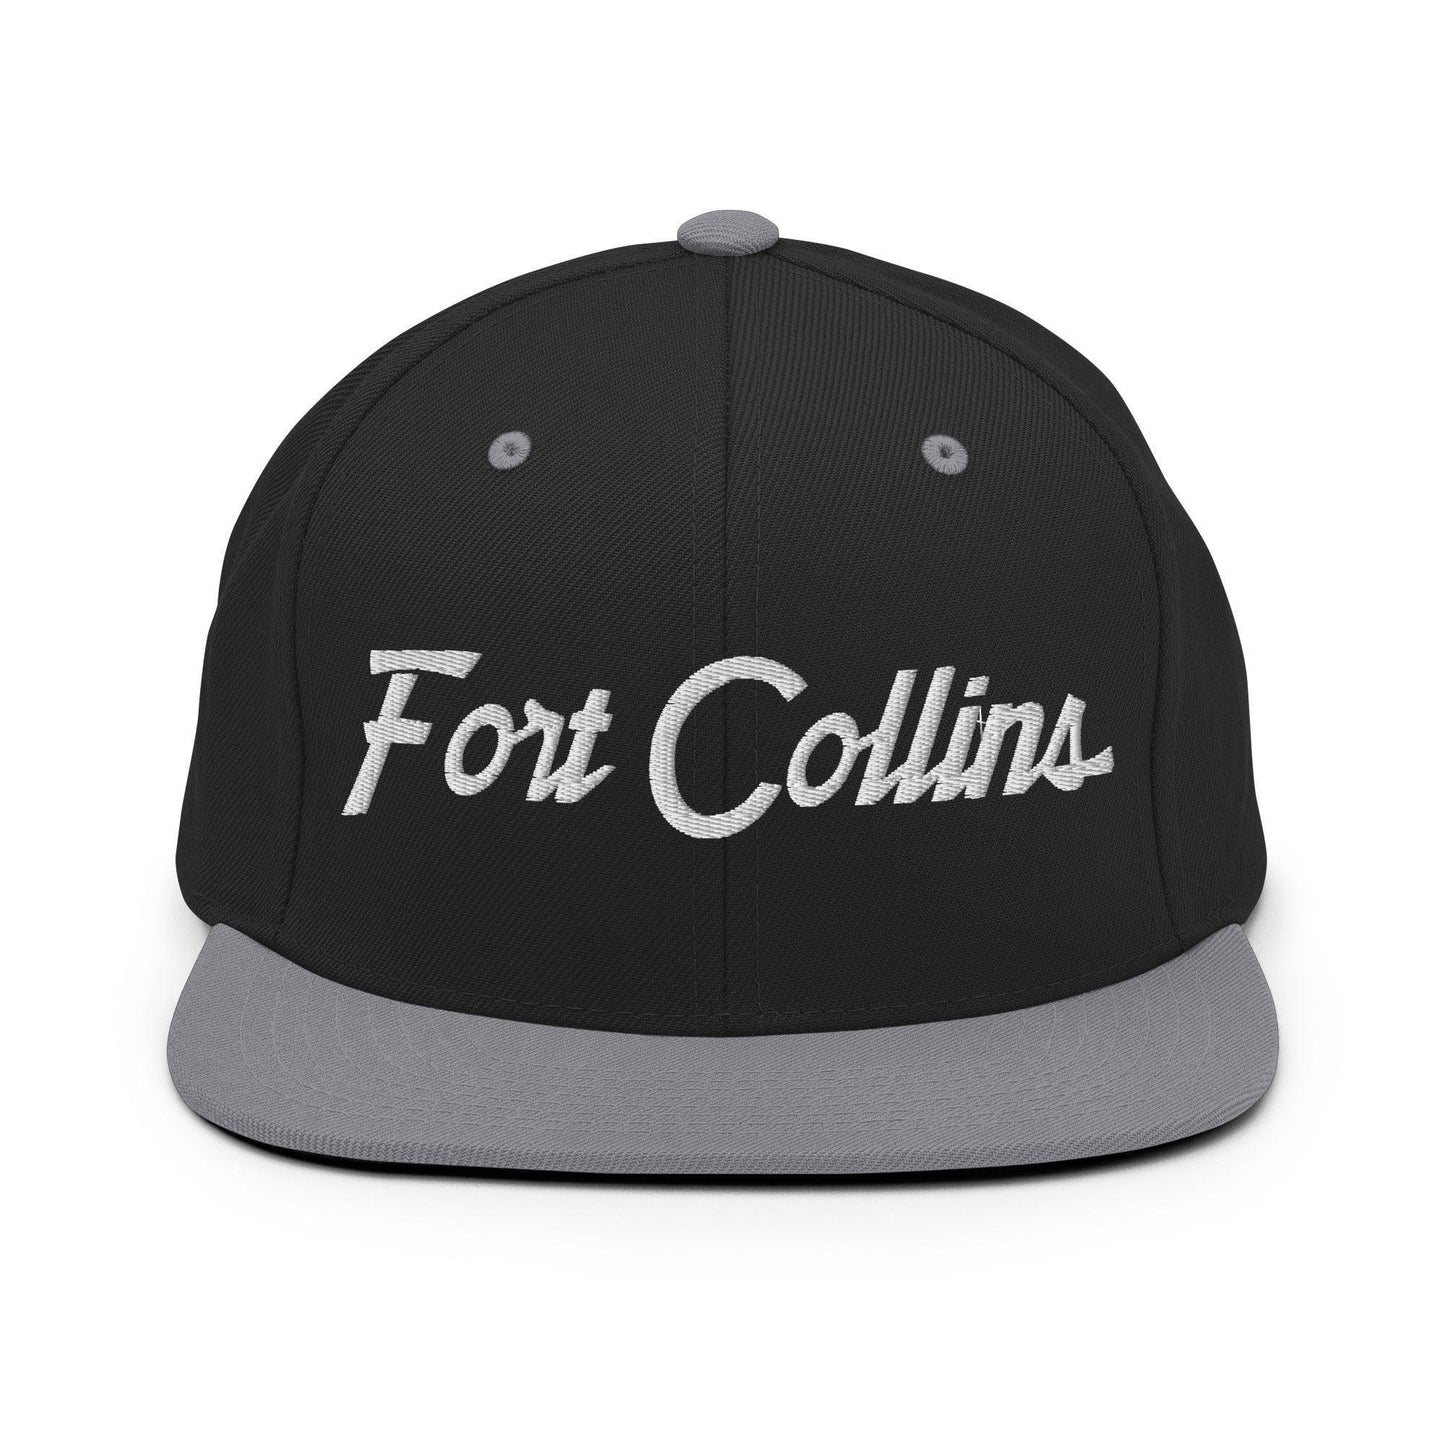 Fort Collins Script Snapback Hat Black Silver